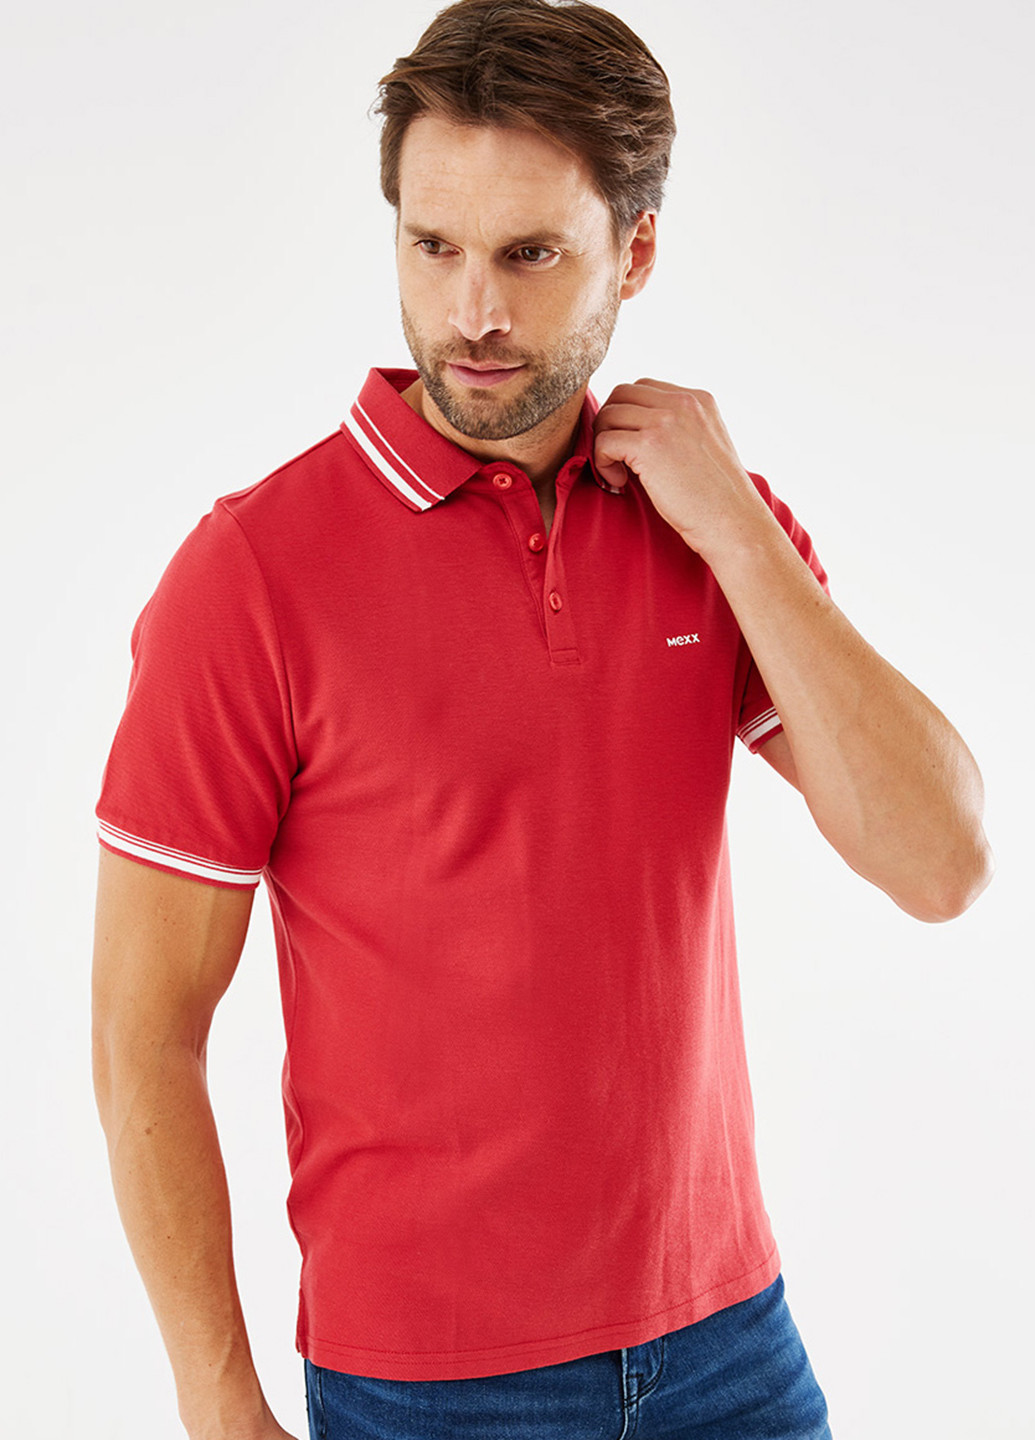 Красная футболка-поло для мужчин Mexx с логотипом